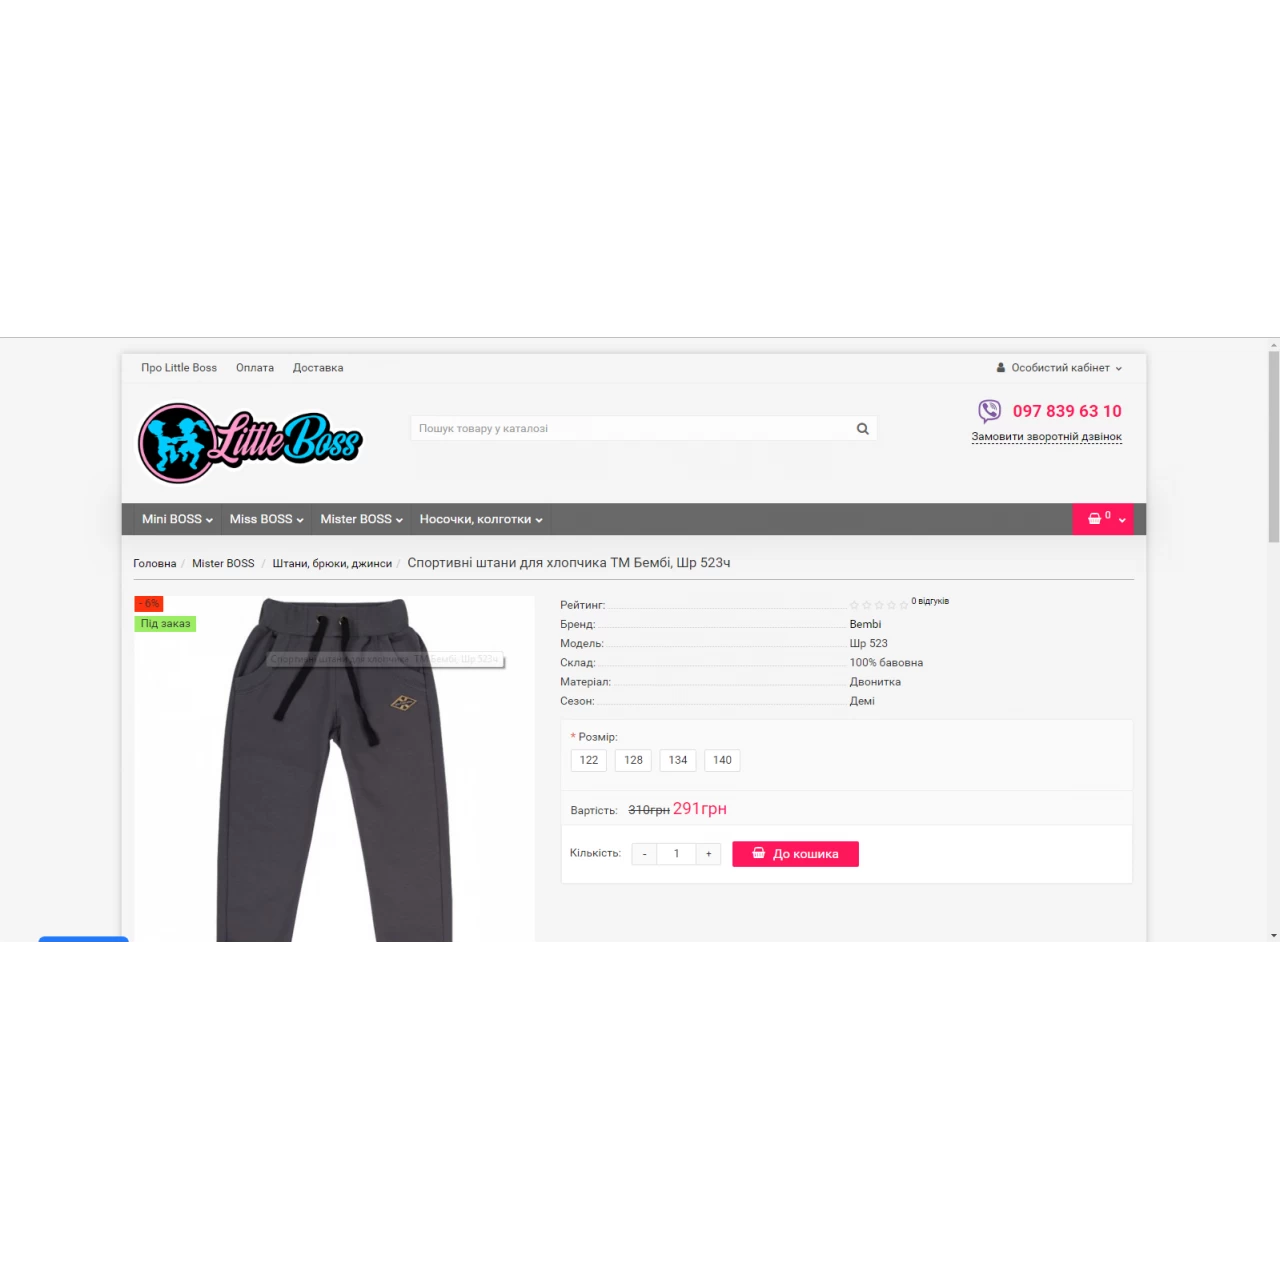 Little-boss.com.ua - Скрипт интернет магазина детской одежды